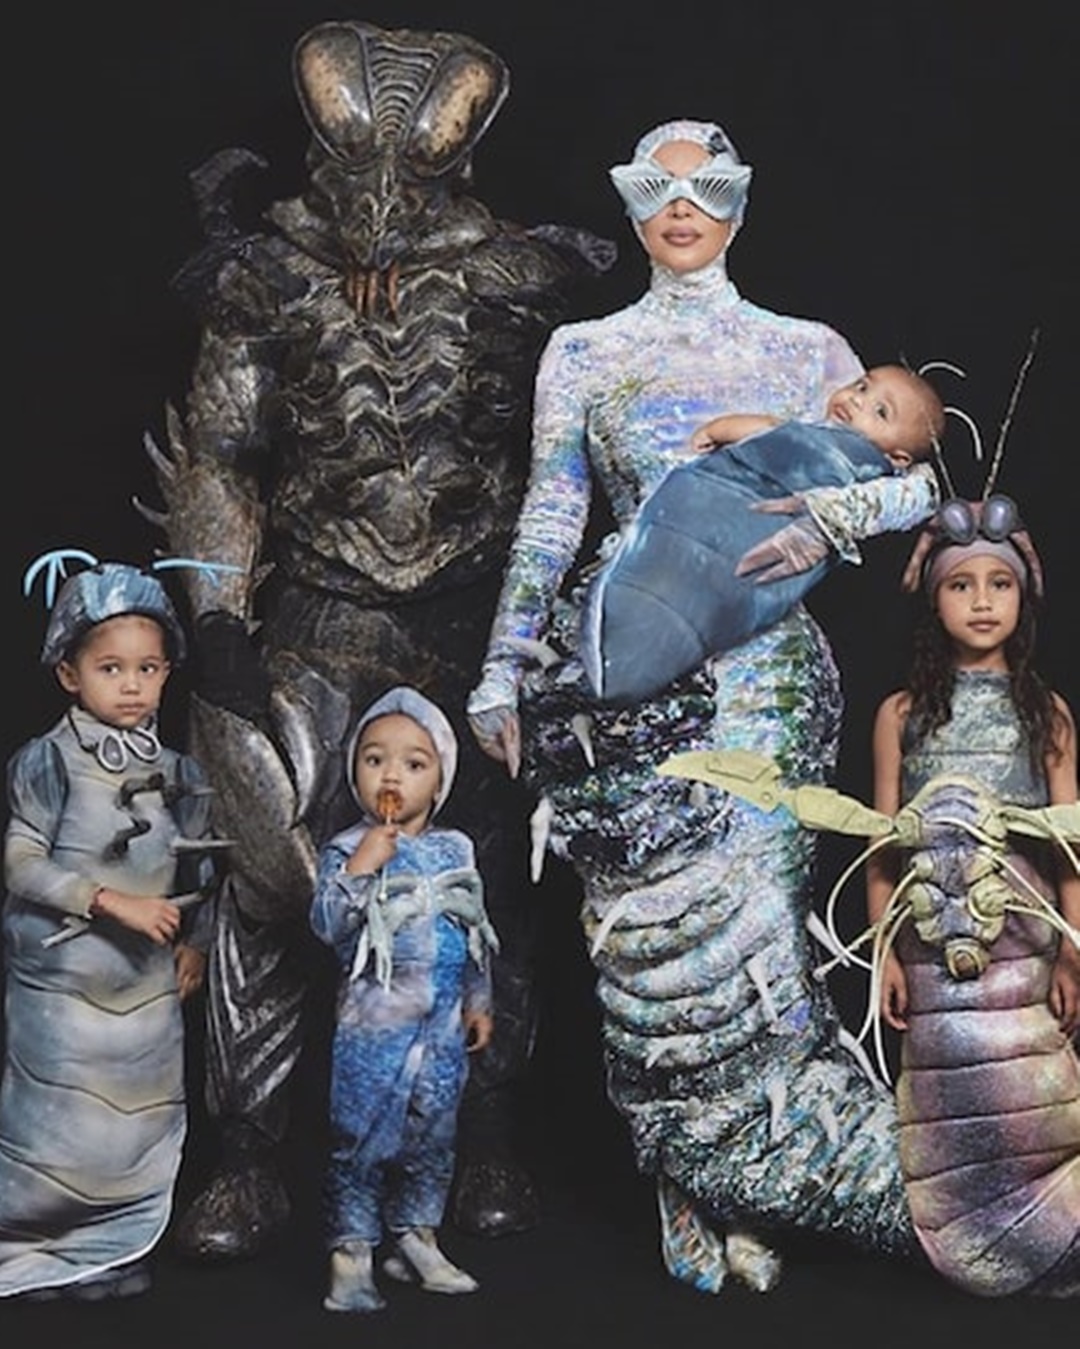  inspirações para Halloween: Kanye West e família fantasiados de vermes